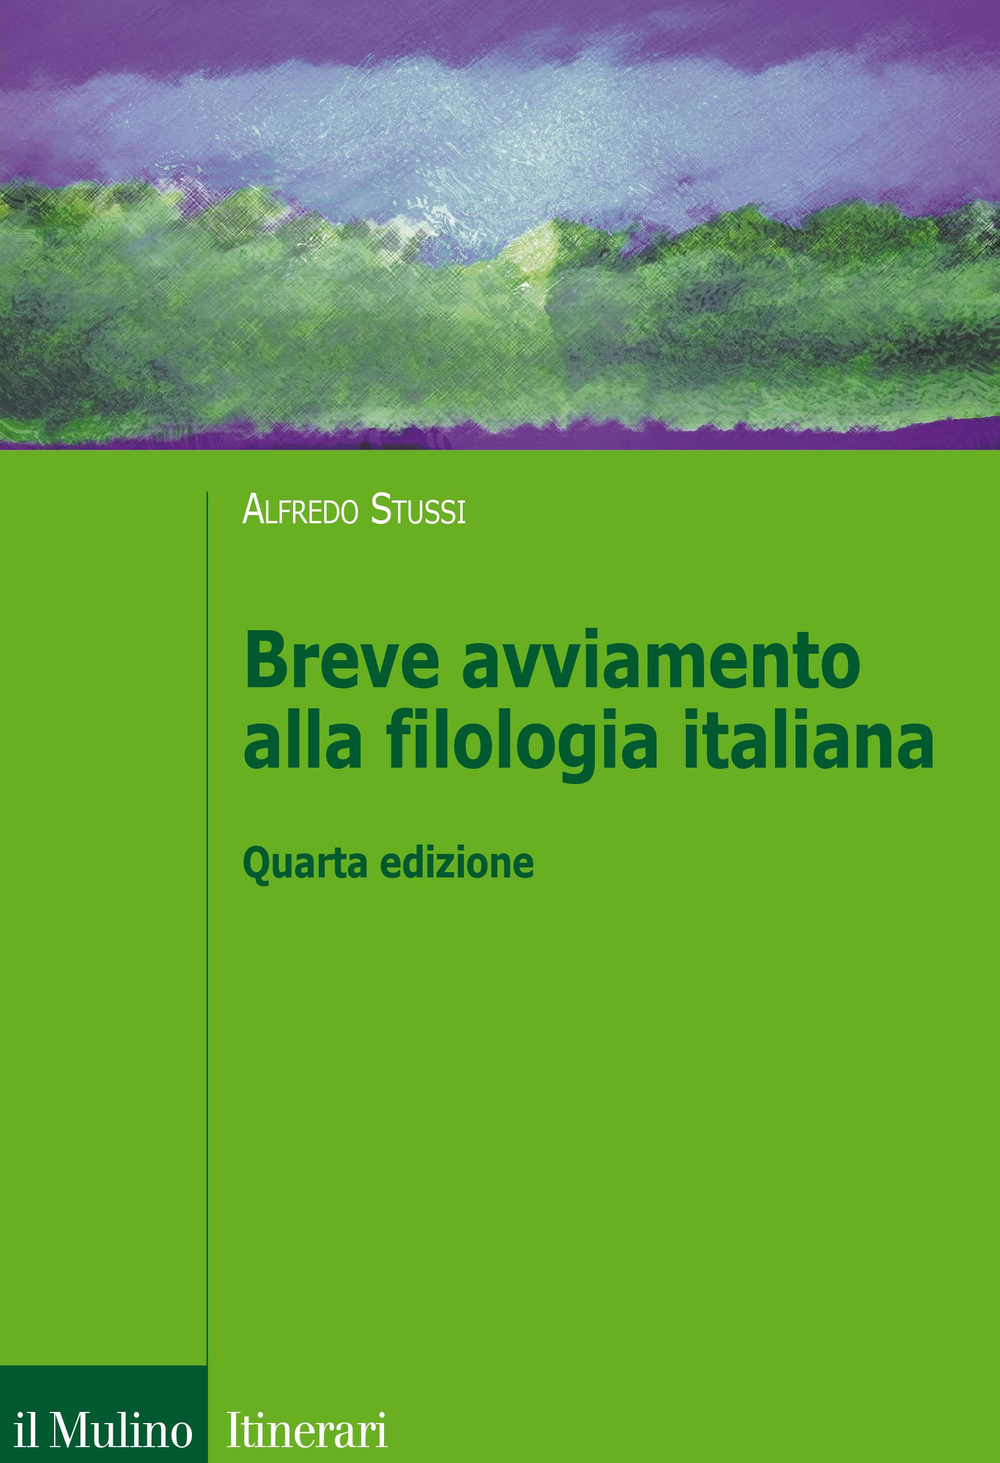 Image of Breve avviamento alla filologia italiana